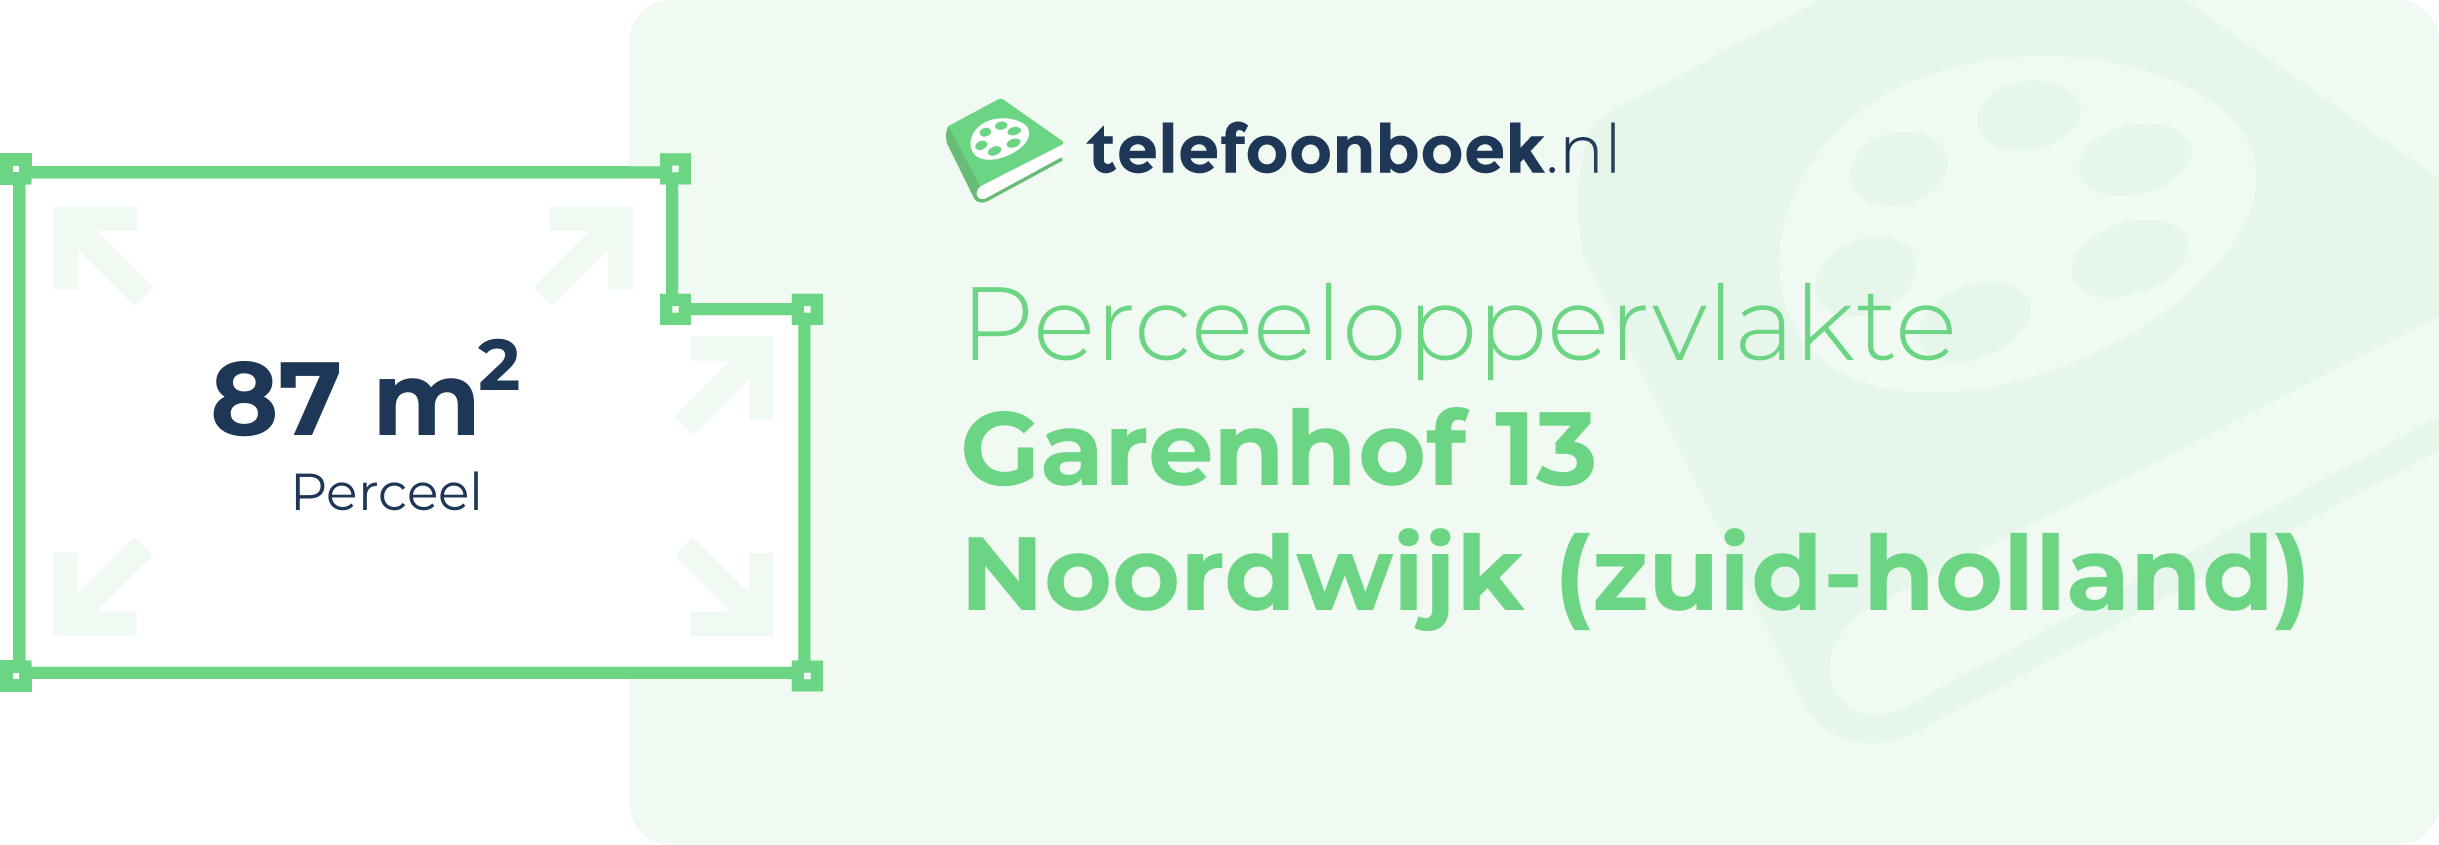 Perceeloppervlakte Garenhof 13 Noordwijk (Zuid-Holland)